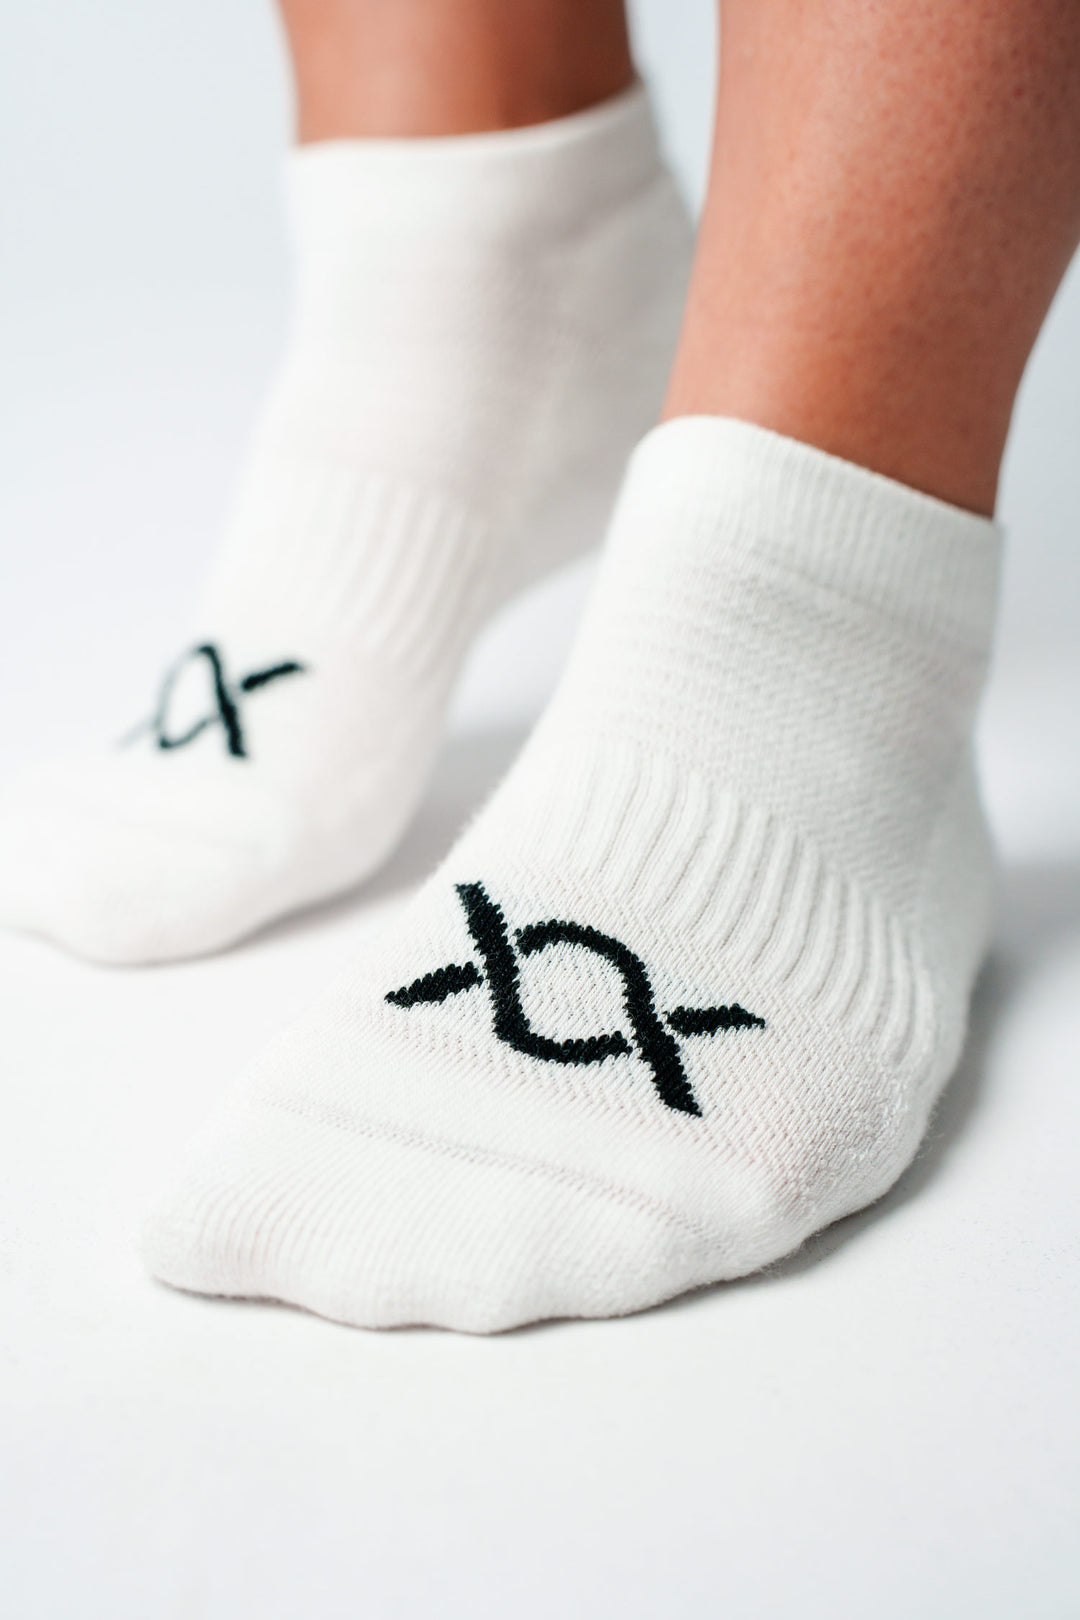 DIXXSON Sneaker Socken - weiß - atmungsaktiv - Bio Baumwolle